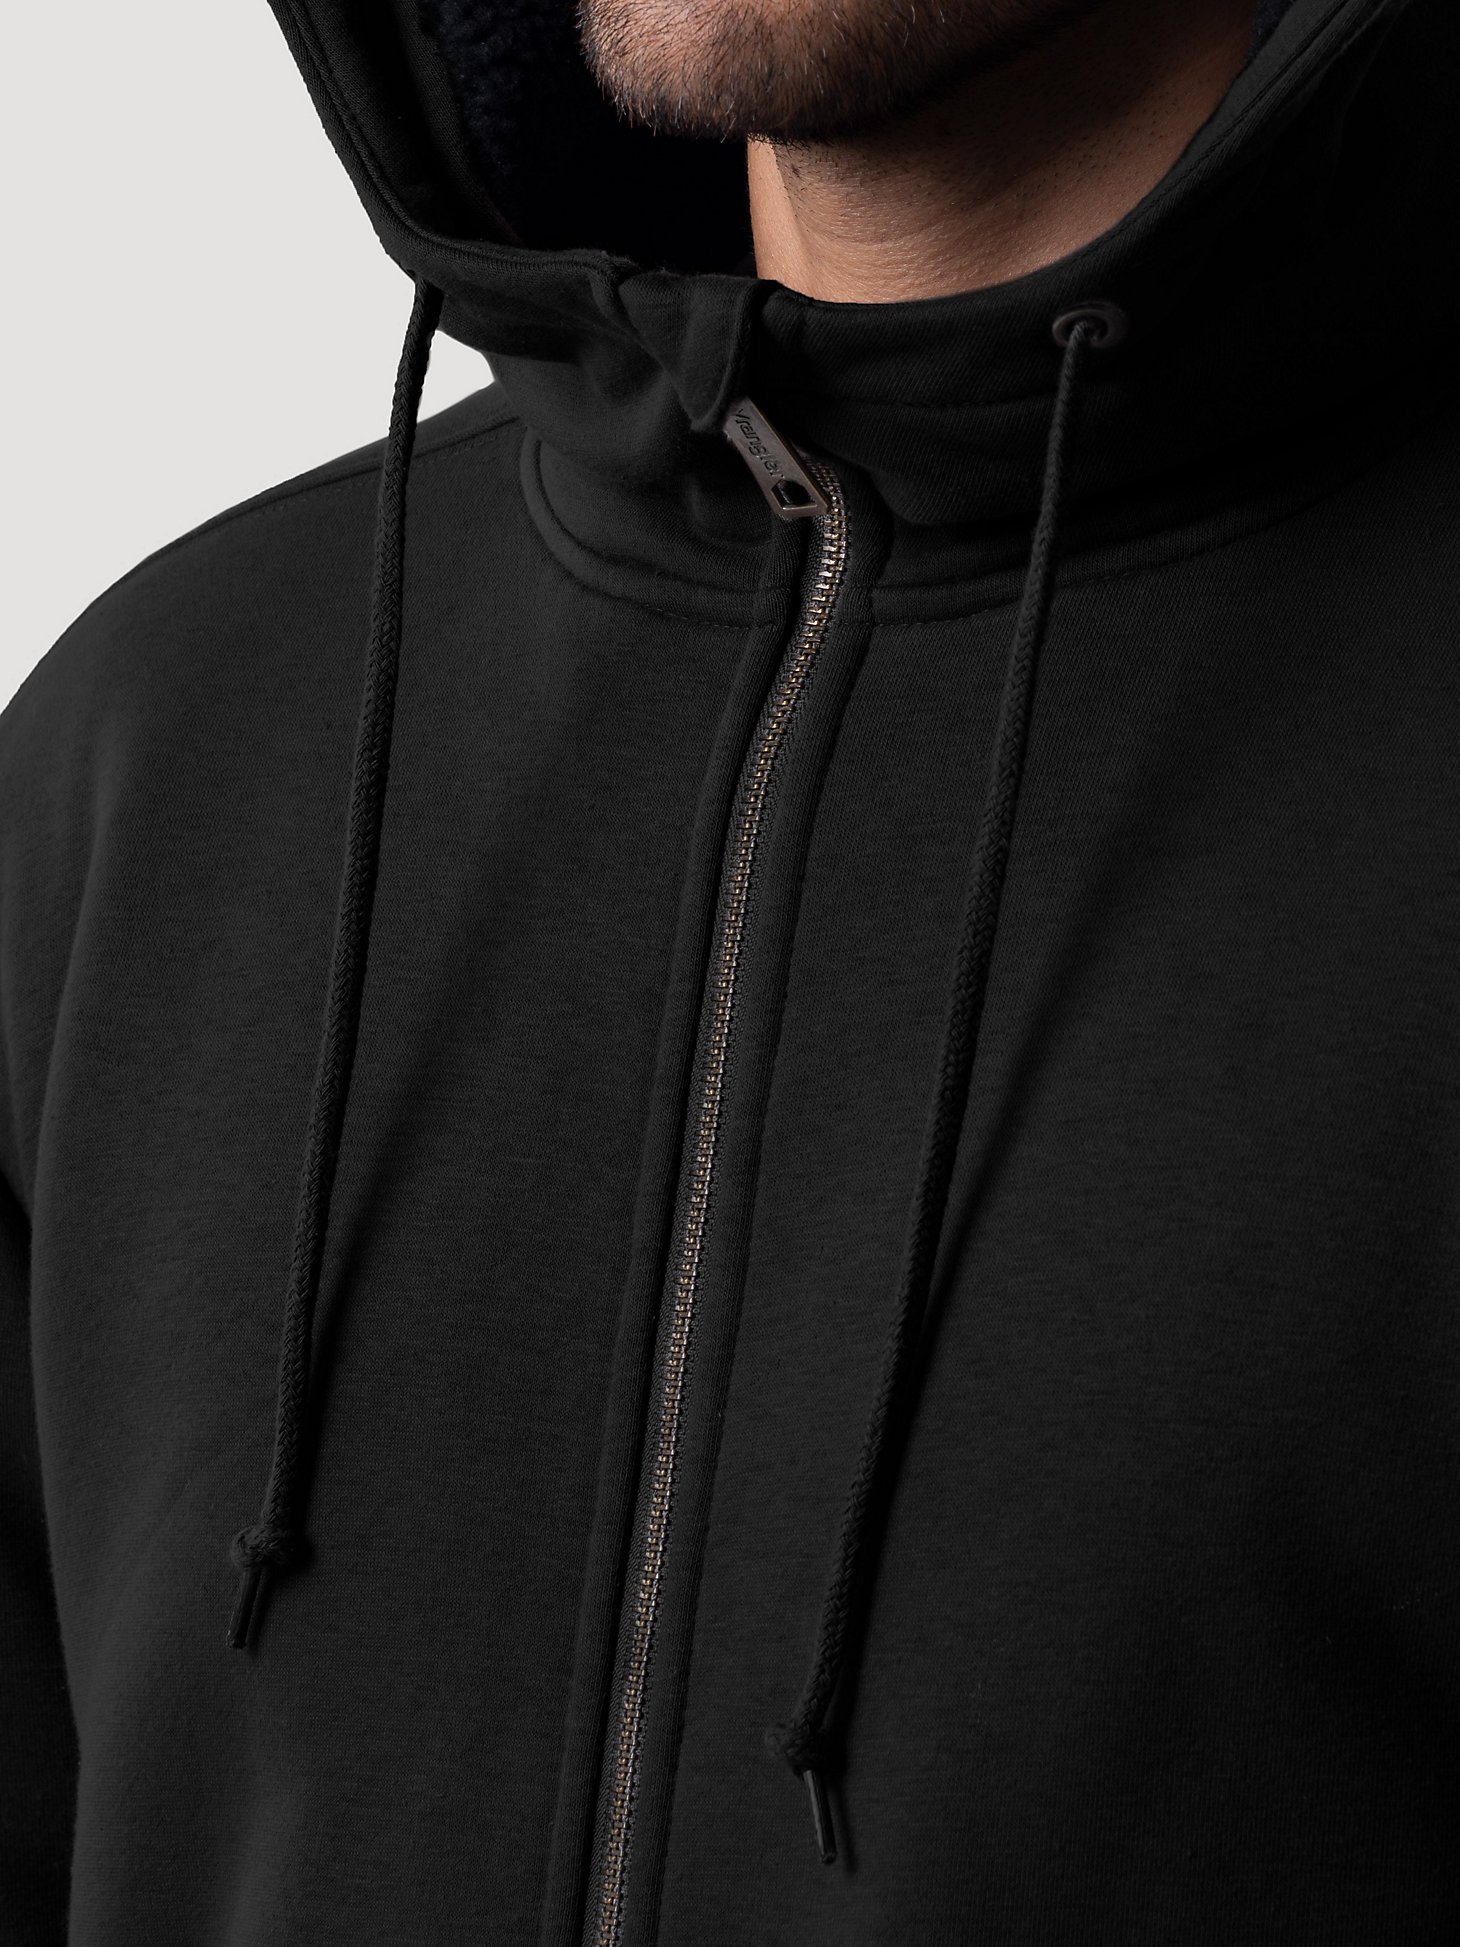 Wrangler® Workwear Sherpa Lined Hooded Sweatshirt in Black alternative view 3